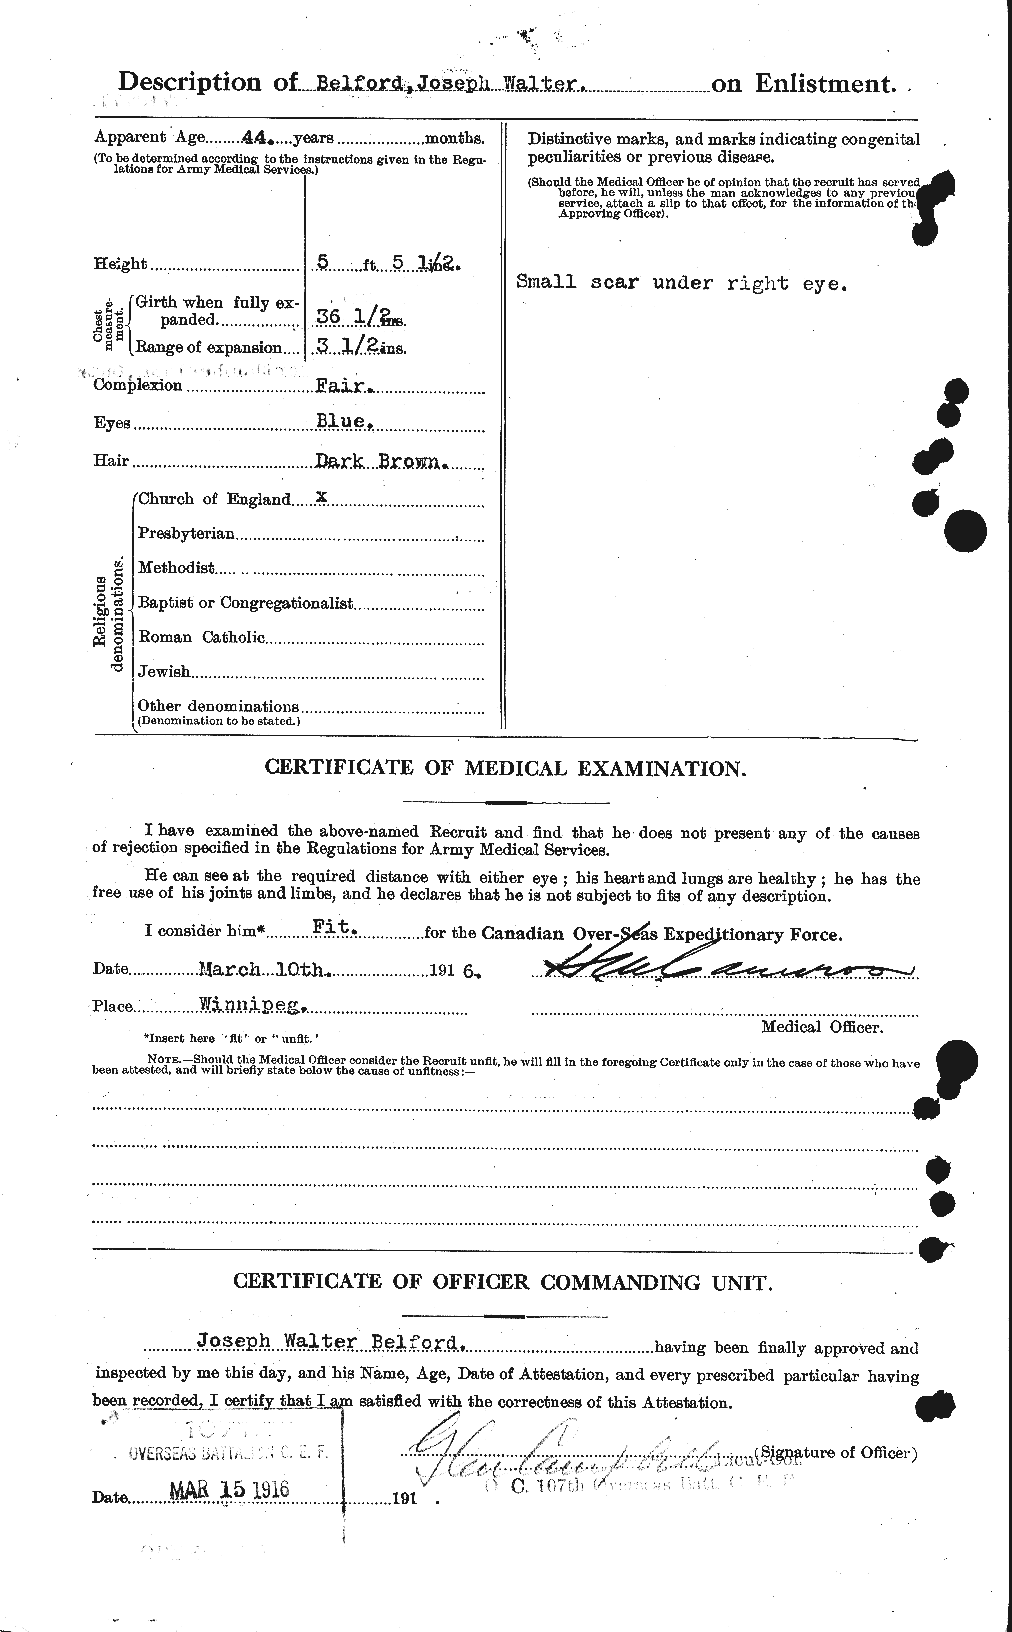 Dossiers du Personnel de la Première Guerre mondiale - CEC 232463b